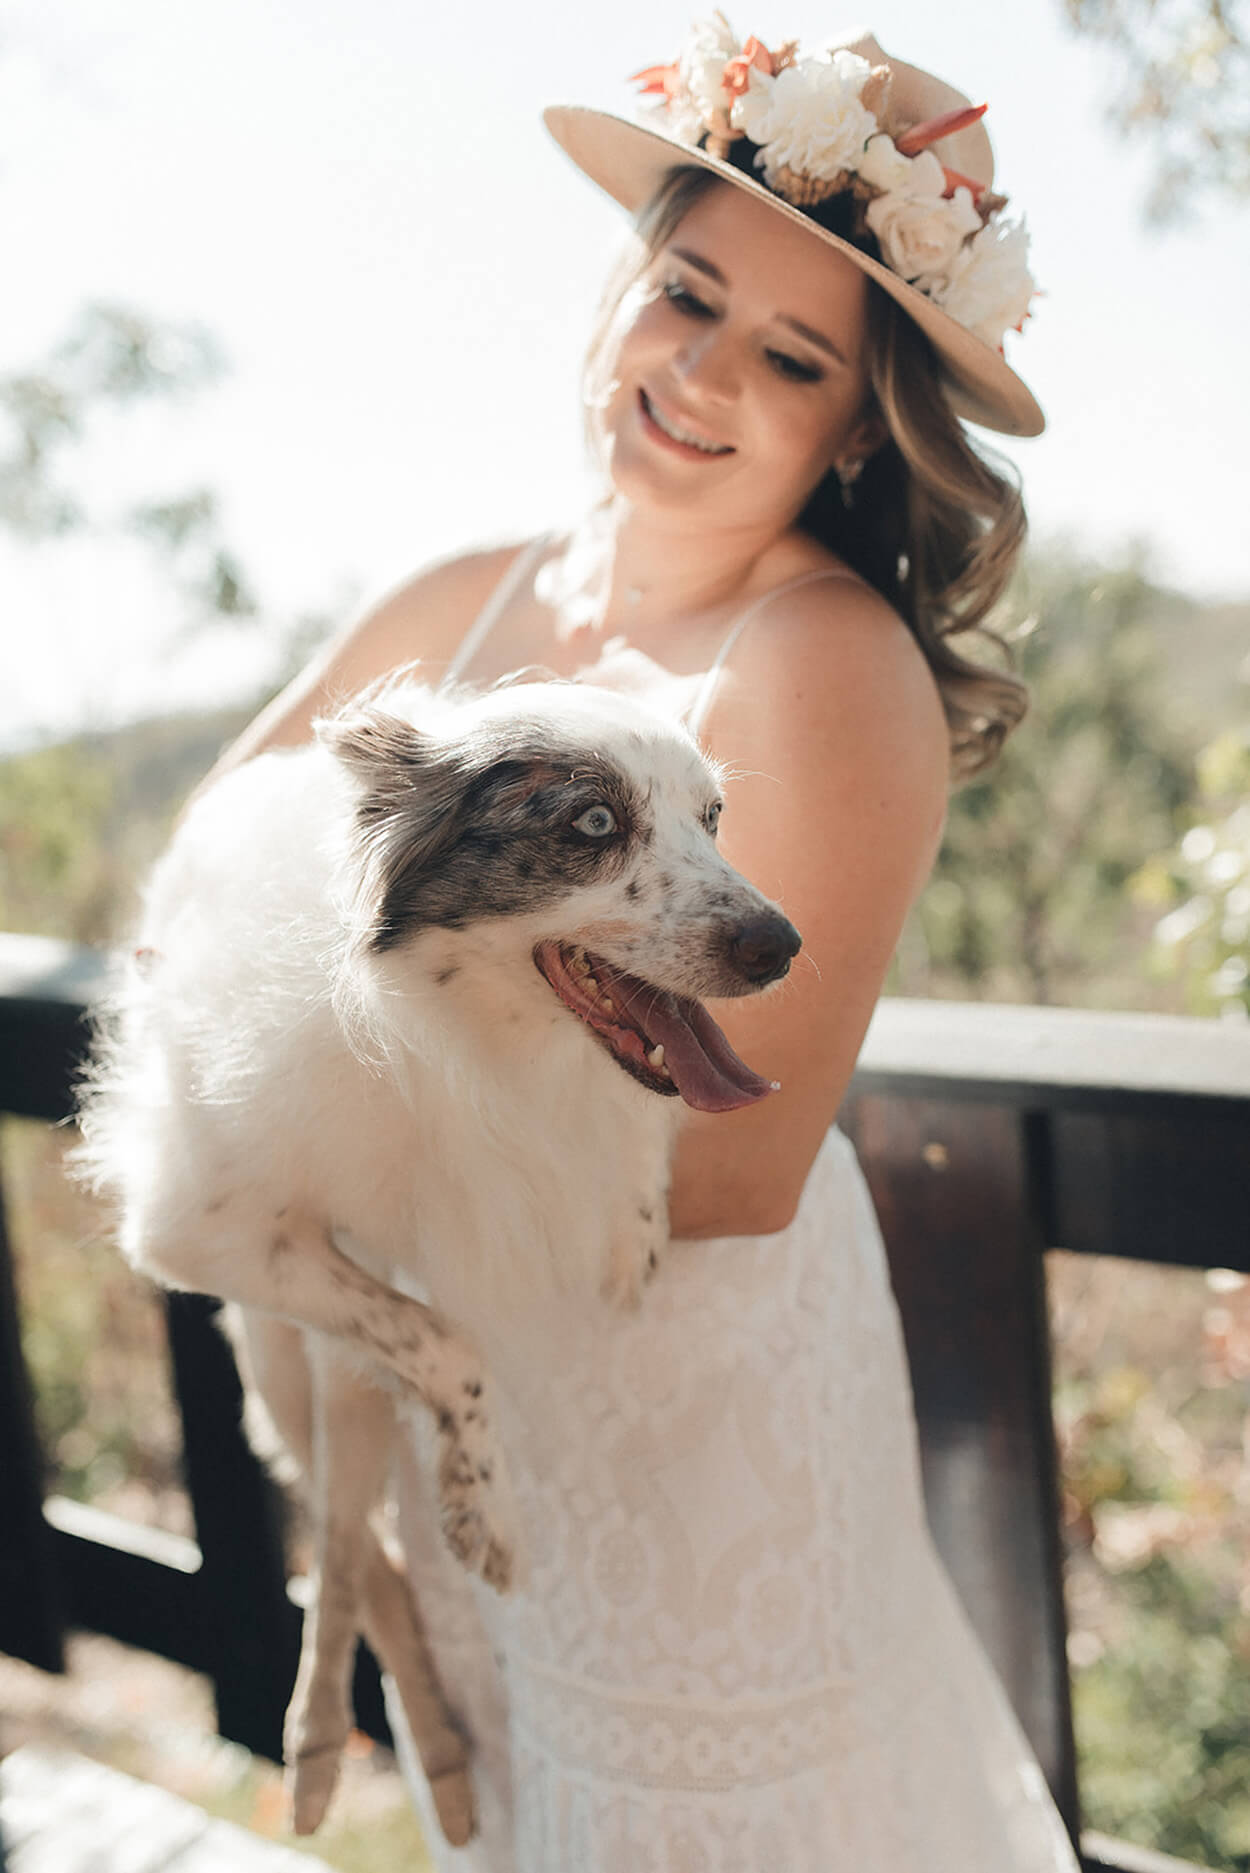 Noiva com chapeu marrom com flores segurando cachorro branco no colo